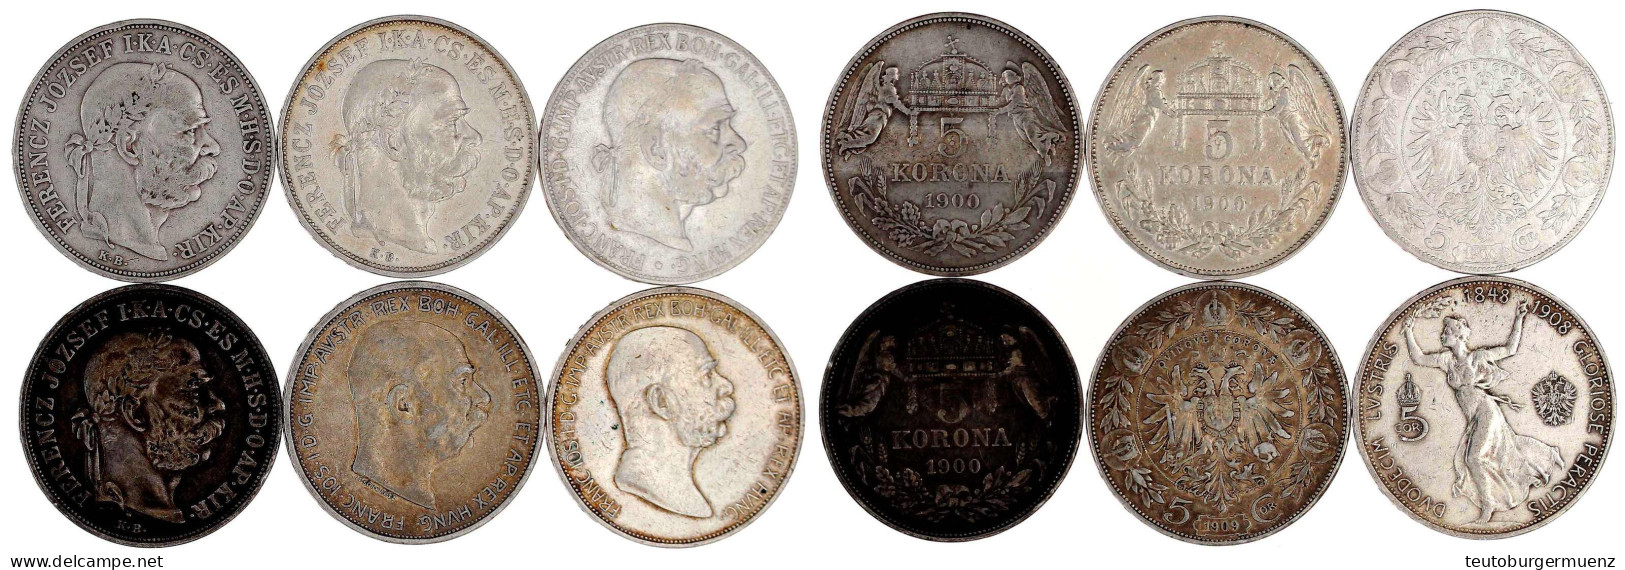 6 X 5 Kronen Aus 1900 Bis 1909, Dabei Auch Regierungsjub. 1908. Meist Sehr Schön - Pièces De Monnaie D'or